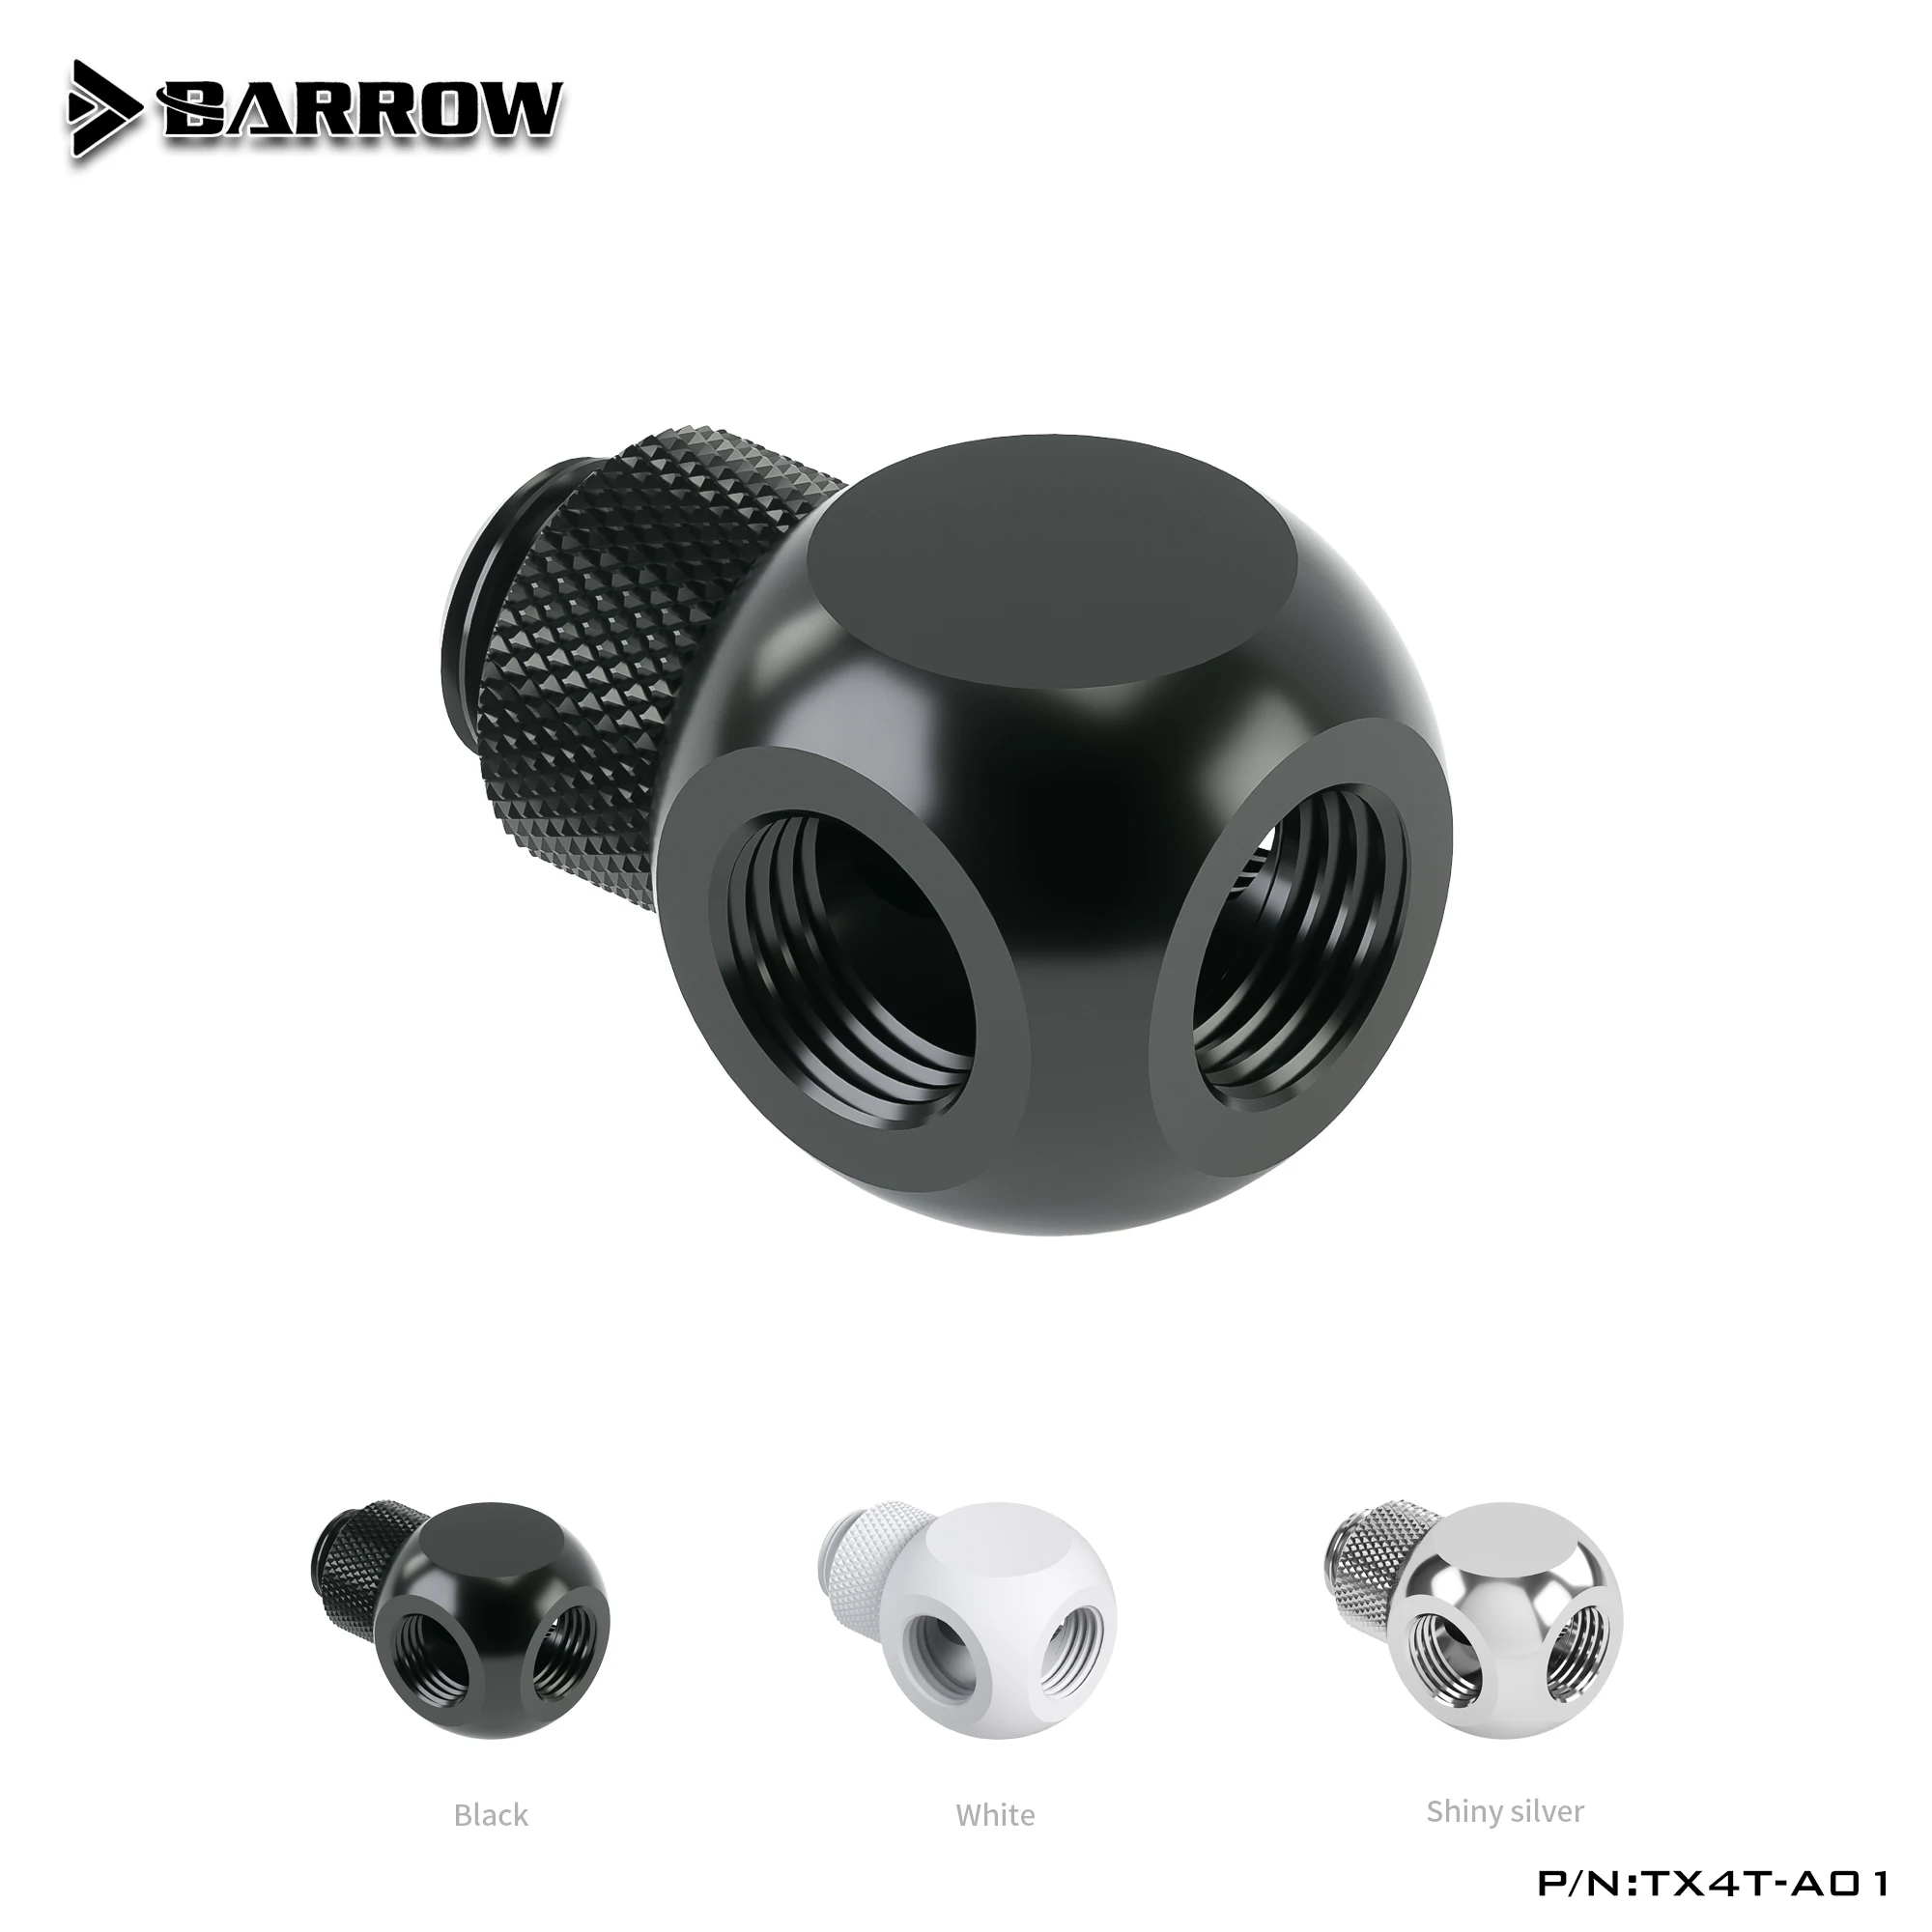 

BARROW G1/4 "4-сторонний вращающийся на 360 градусов адаптер, самодельные компьютерные фитинги для жидкости, черный/яркий серебристый/белый, искусственная кожа